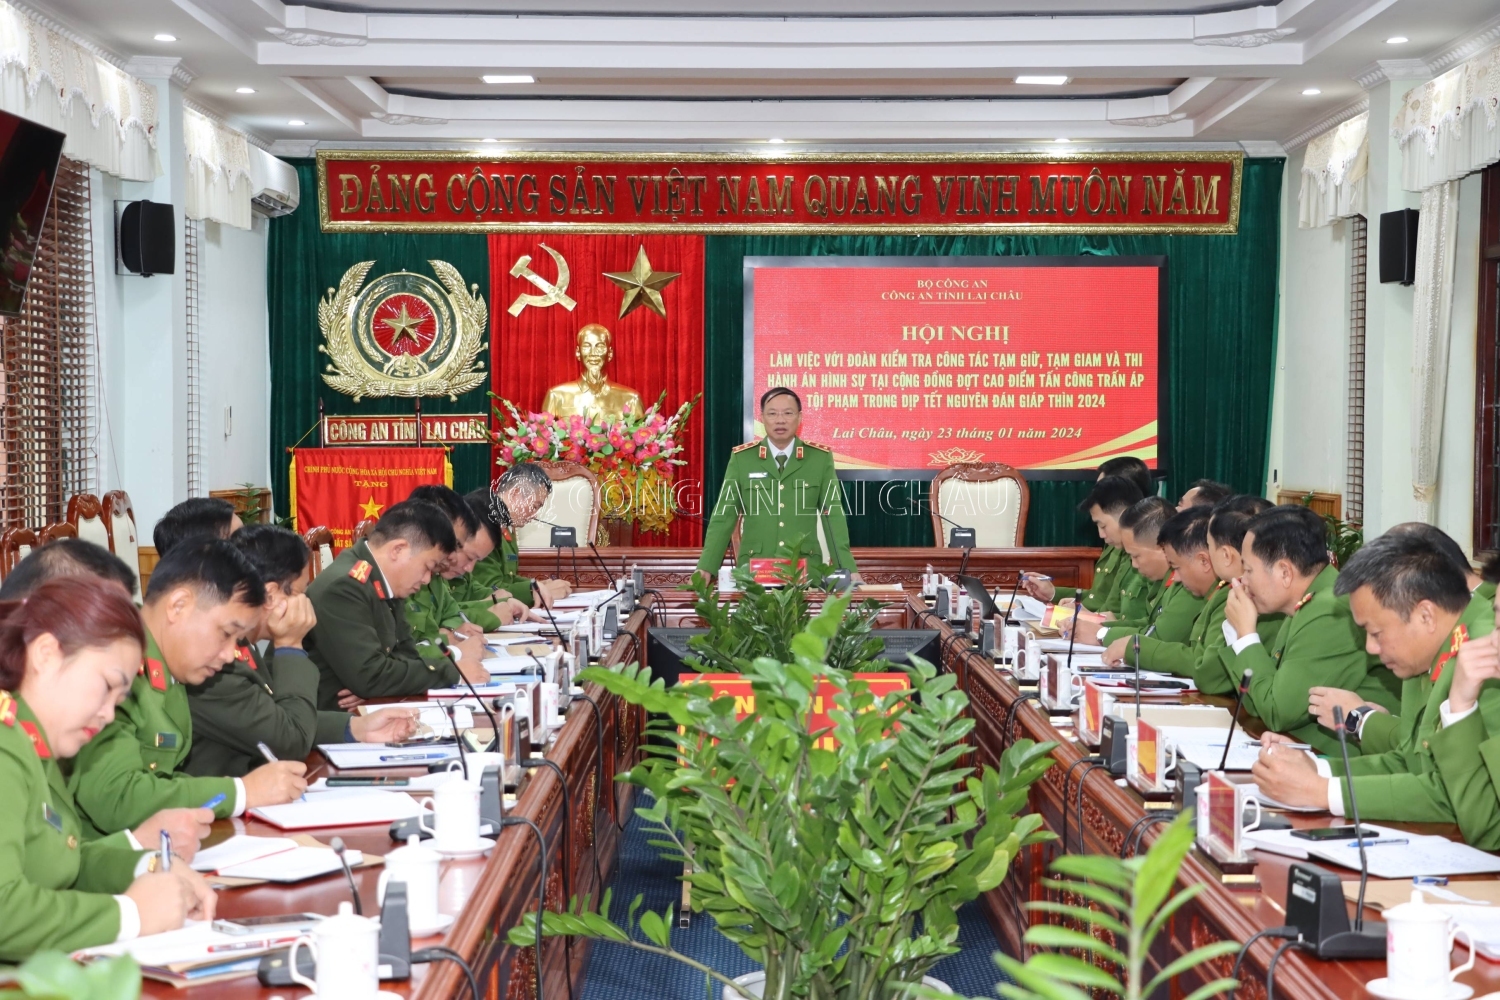 Trung tướng Nguyễn Văn Phục, Cục trưởng Cục Cảnh sát quản lý tạm giữ, tạm giam và thi hành án hình sự phát biểu kết luận tại buổi kiểm tra